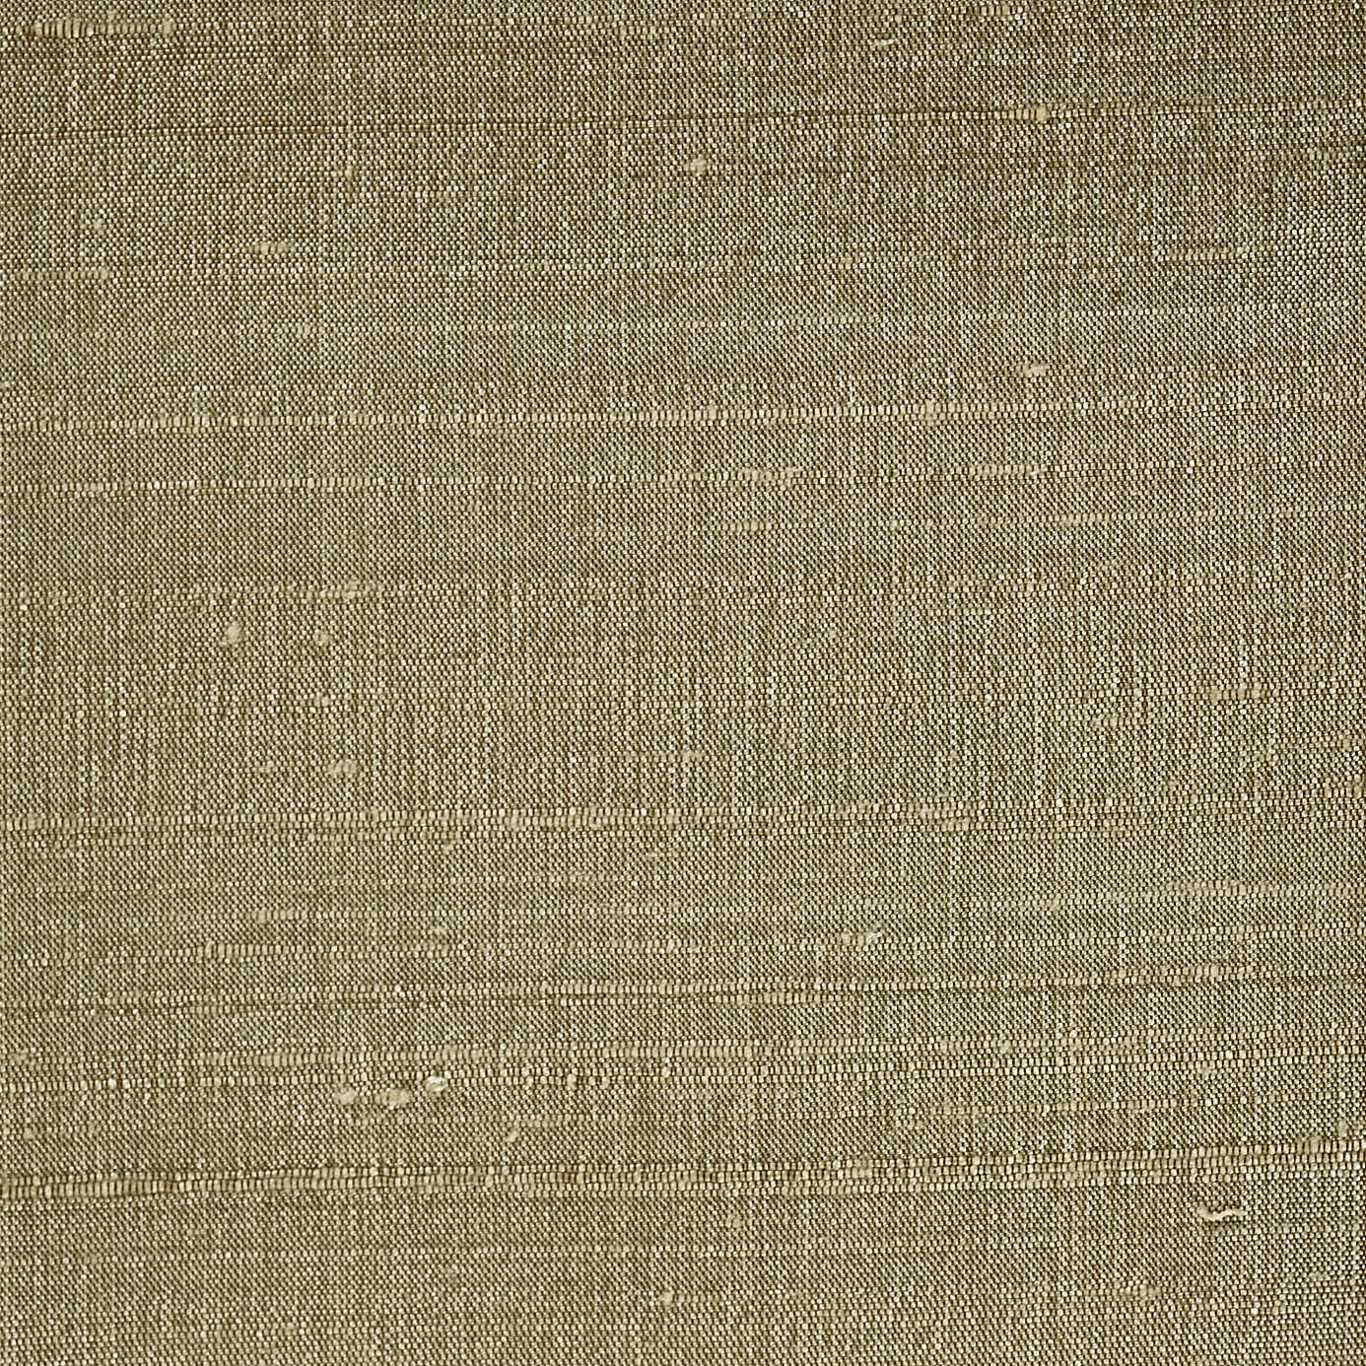 Laminar Sahara Fabric by HAR